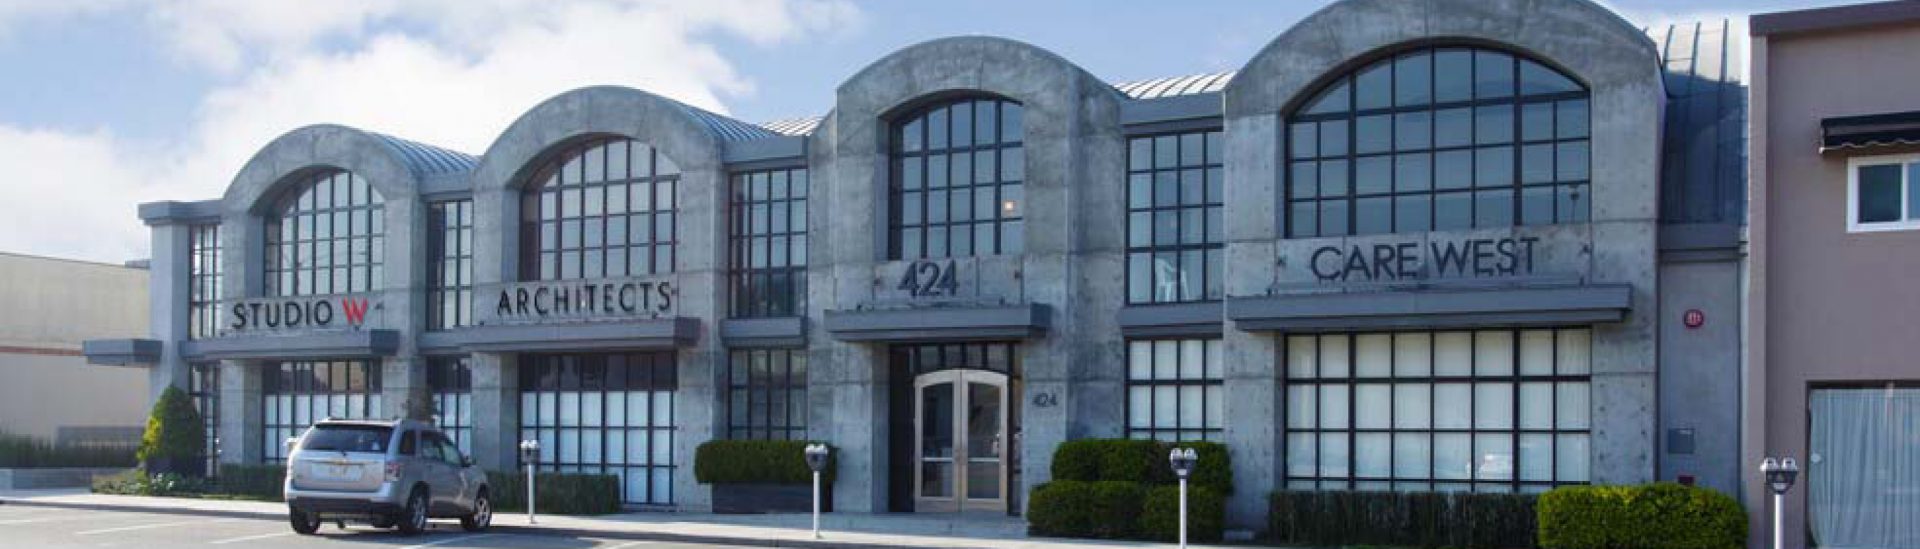 Studio W Architects Is Relocating Orange County Studio